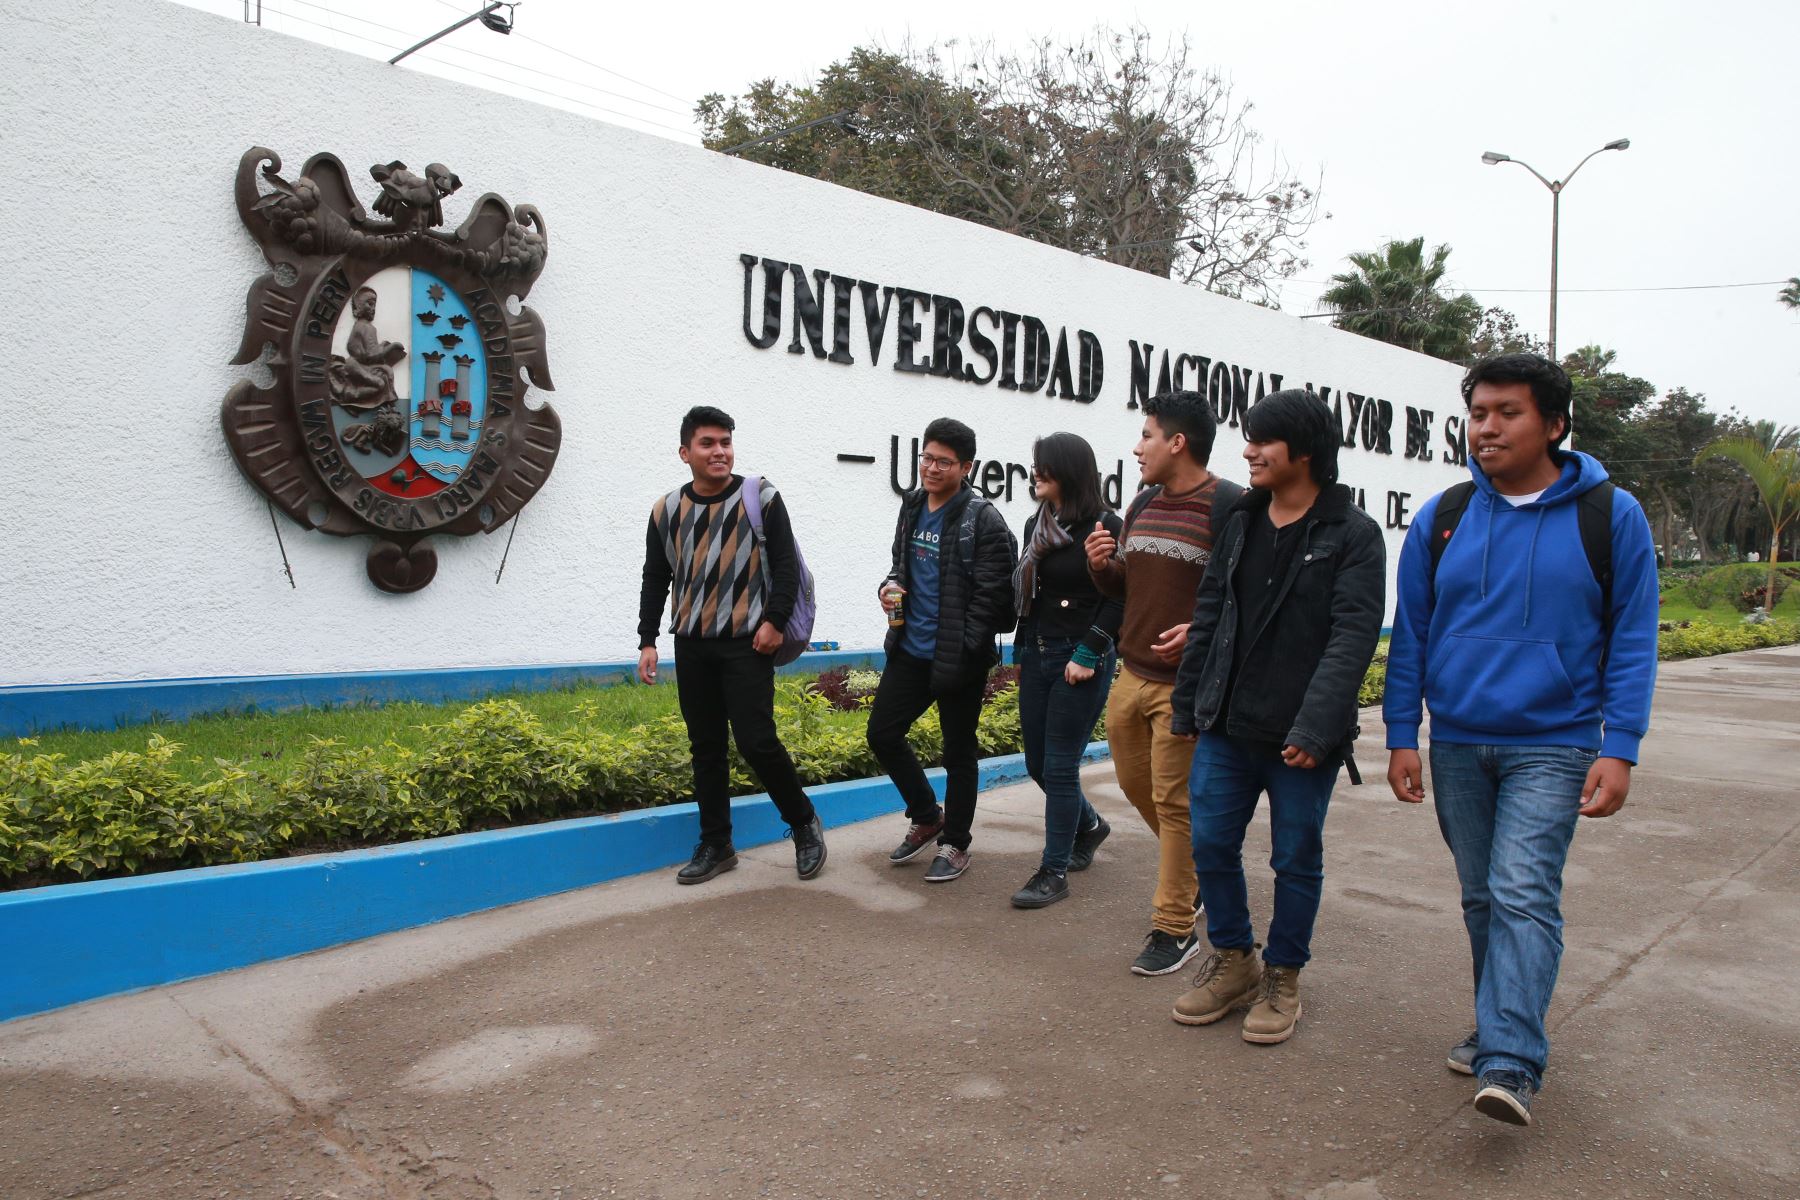 La Universidad Nacional Mayor de San Marcos alcanza nuevo logro en inclusión lingüística. Foto: ANDINA/Vidal Tarqui.